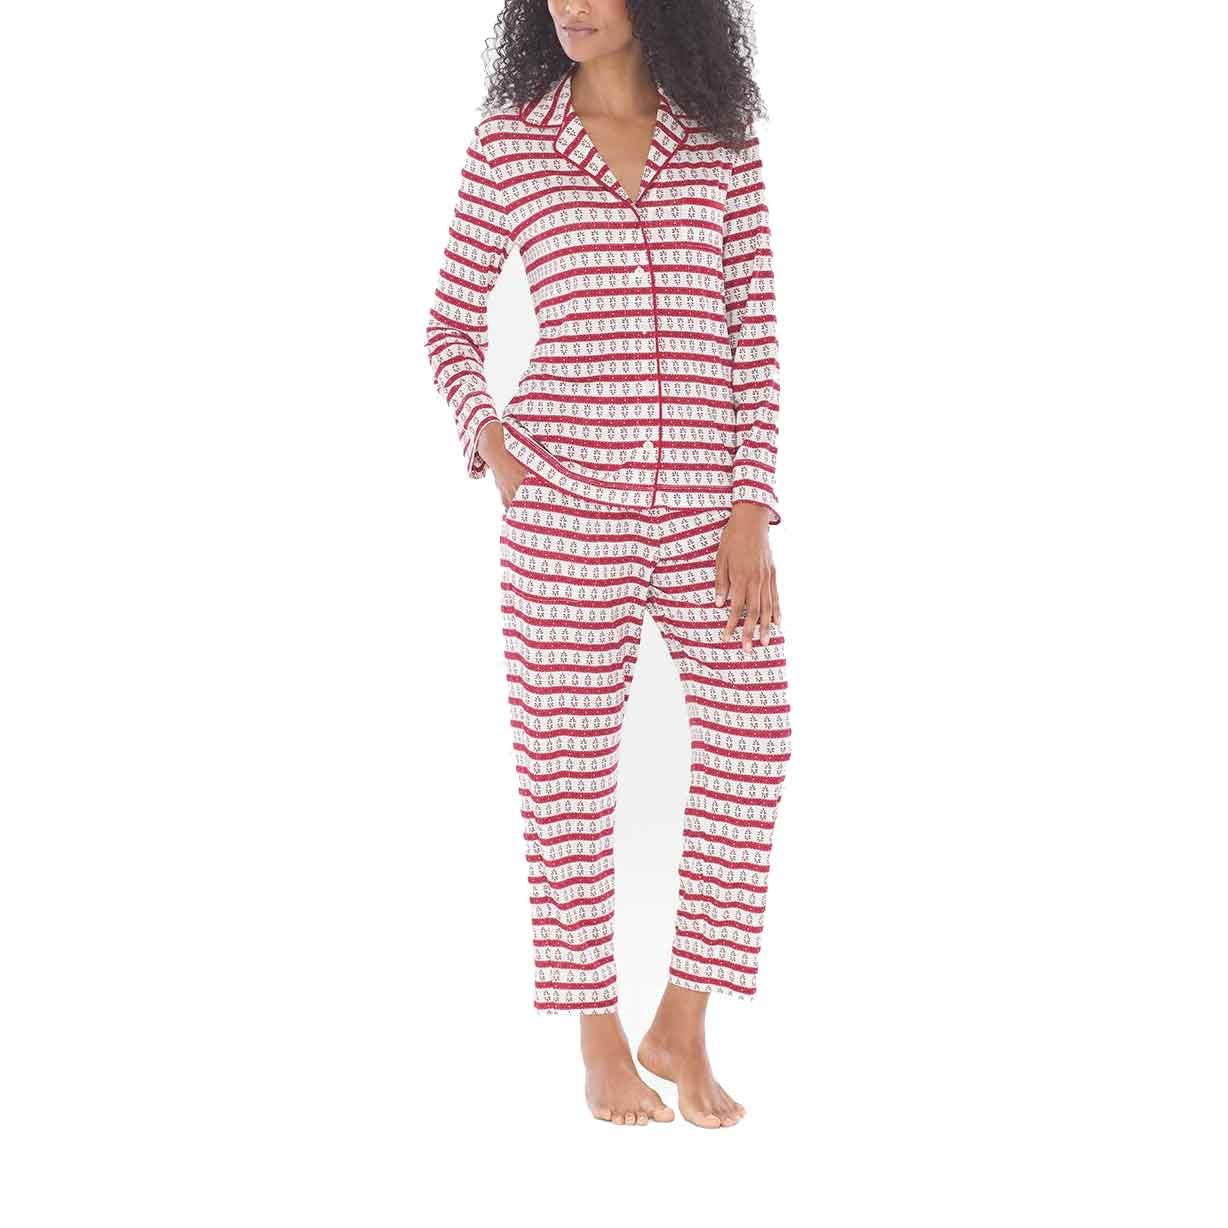 Bu Soğutucu Pijamalar Beni Geceleri Aşırı Isınmaktan Koruyan Tek Pijamalar